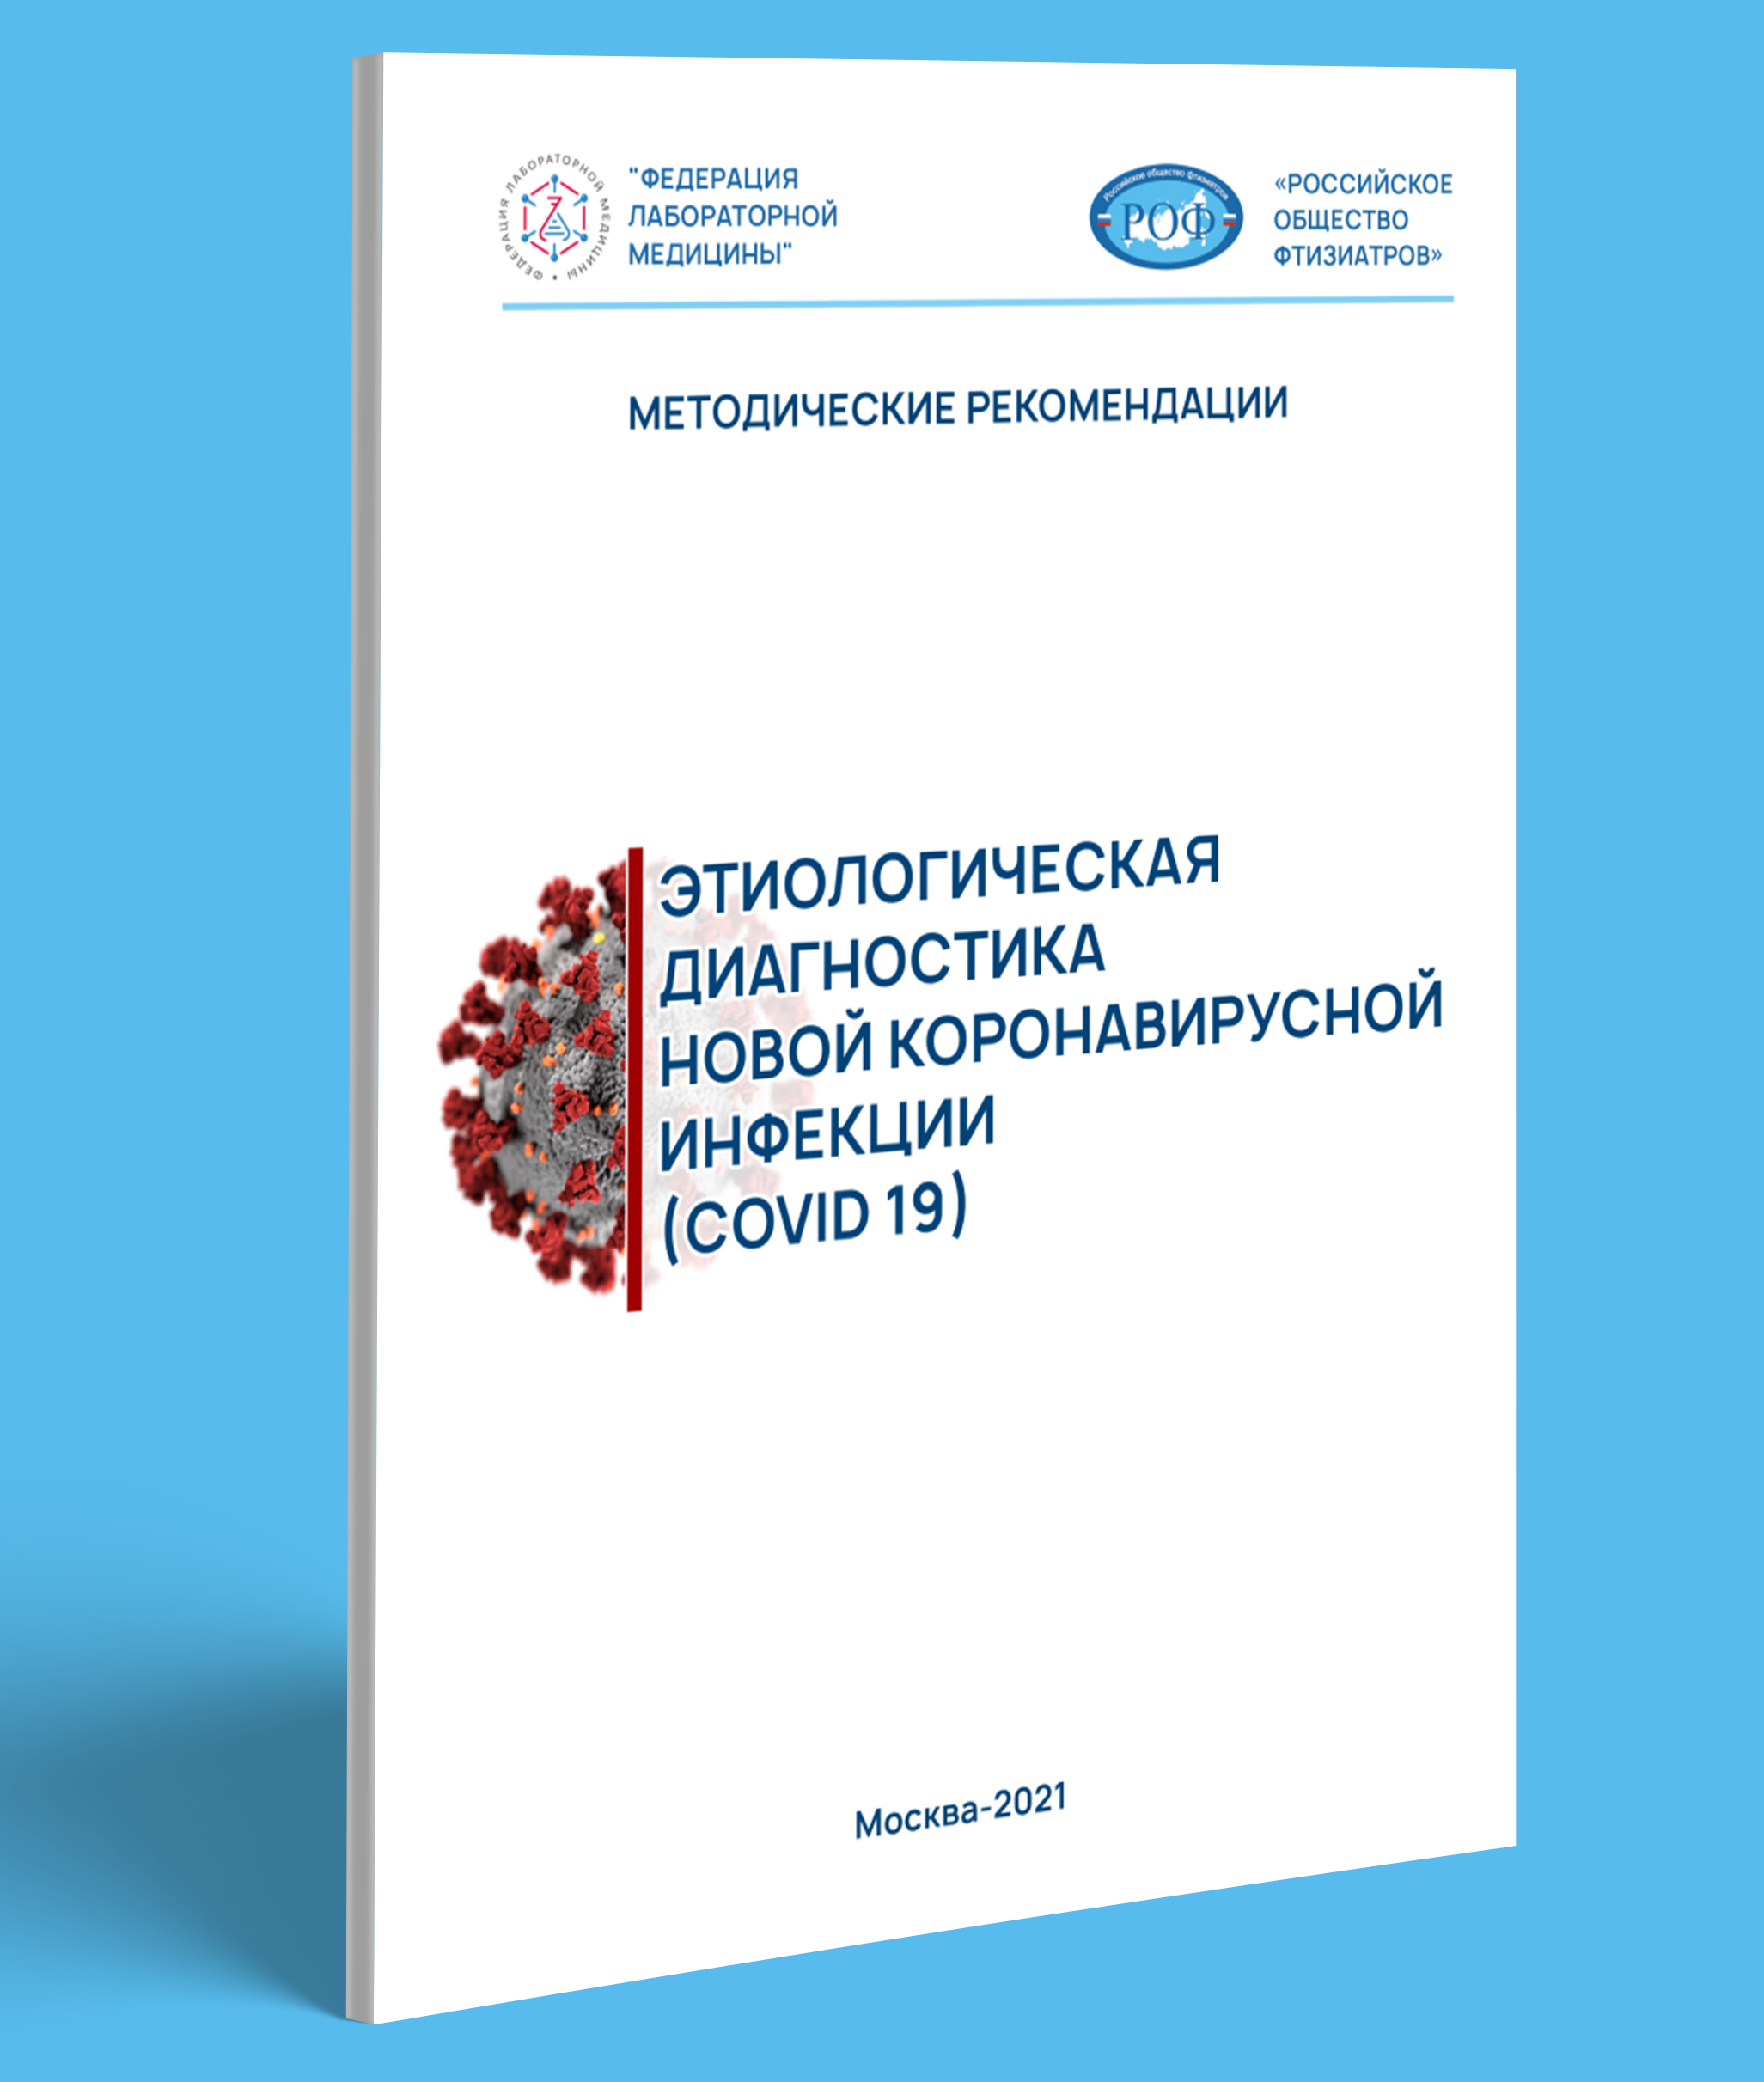 Этиологическая диагностика новой коронавирусной инфекции (COVID 19). Методические рекомендации